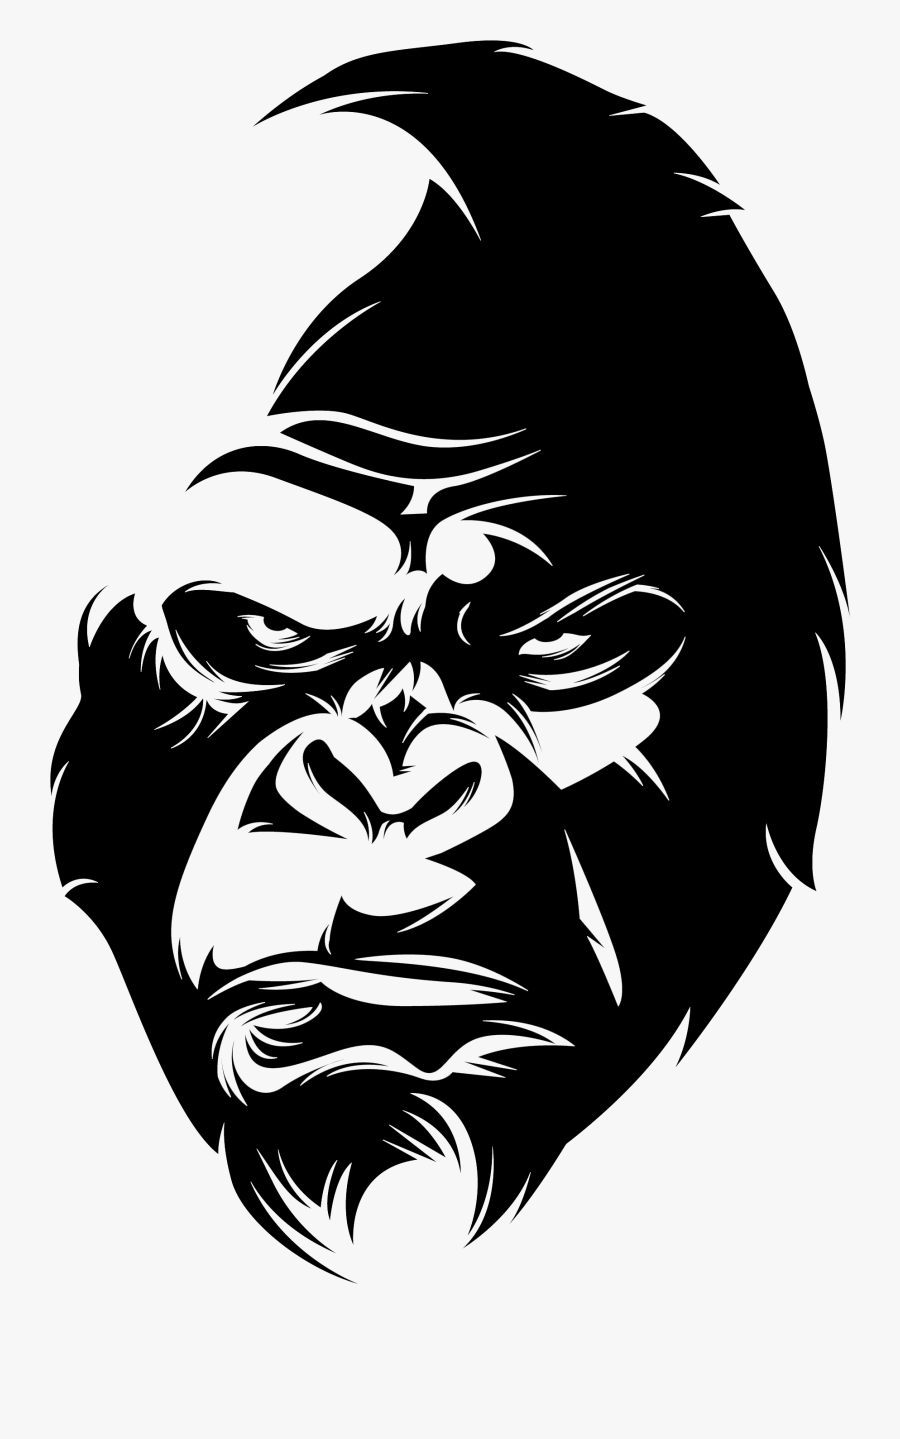 King Kong Logo Png, Transparent Clipart